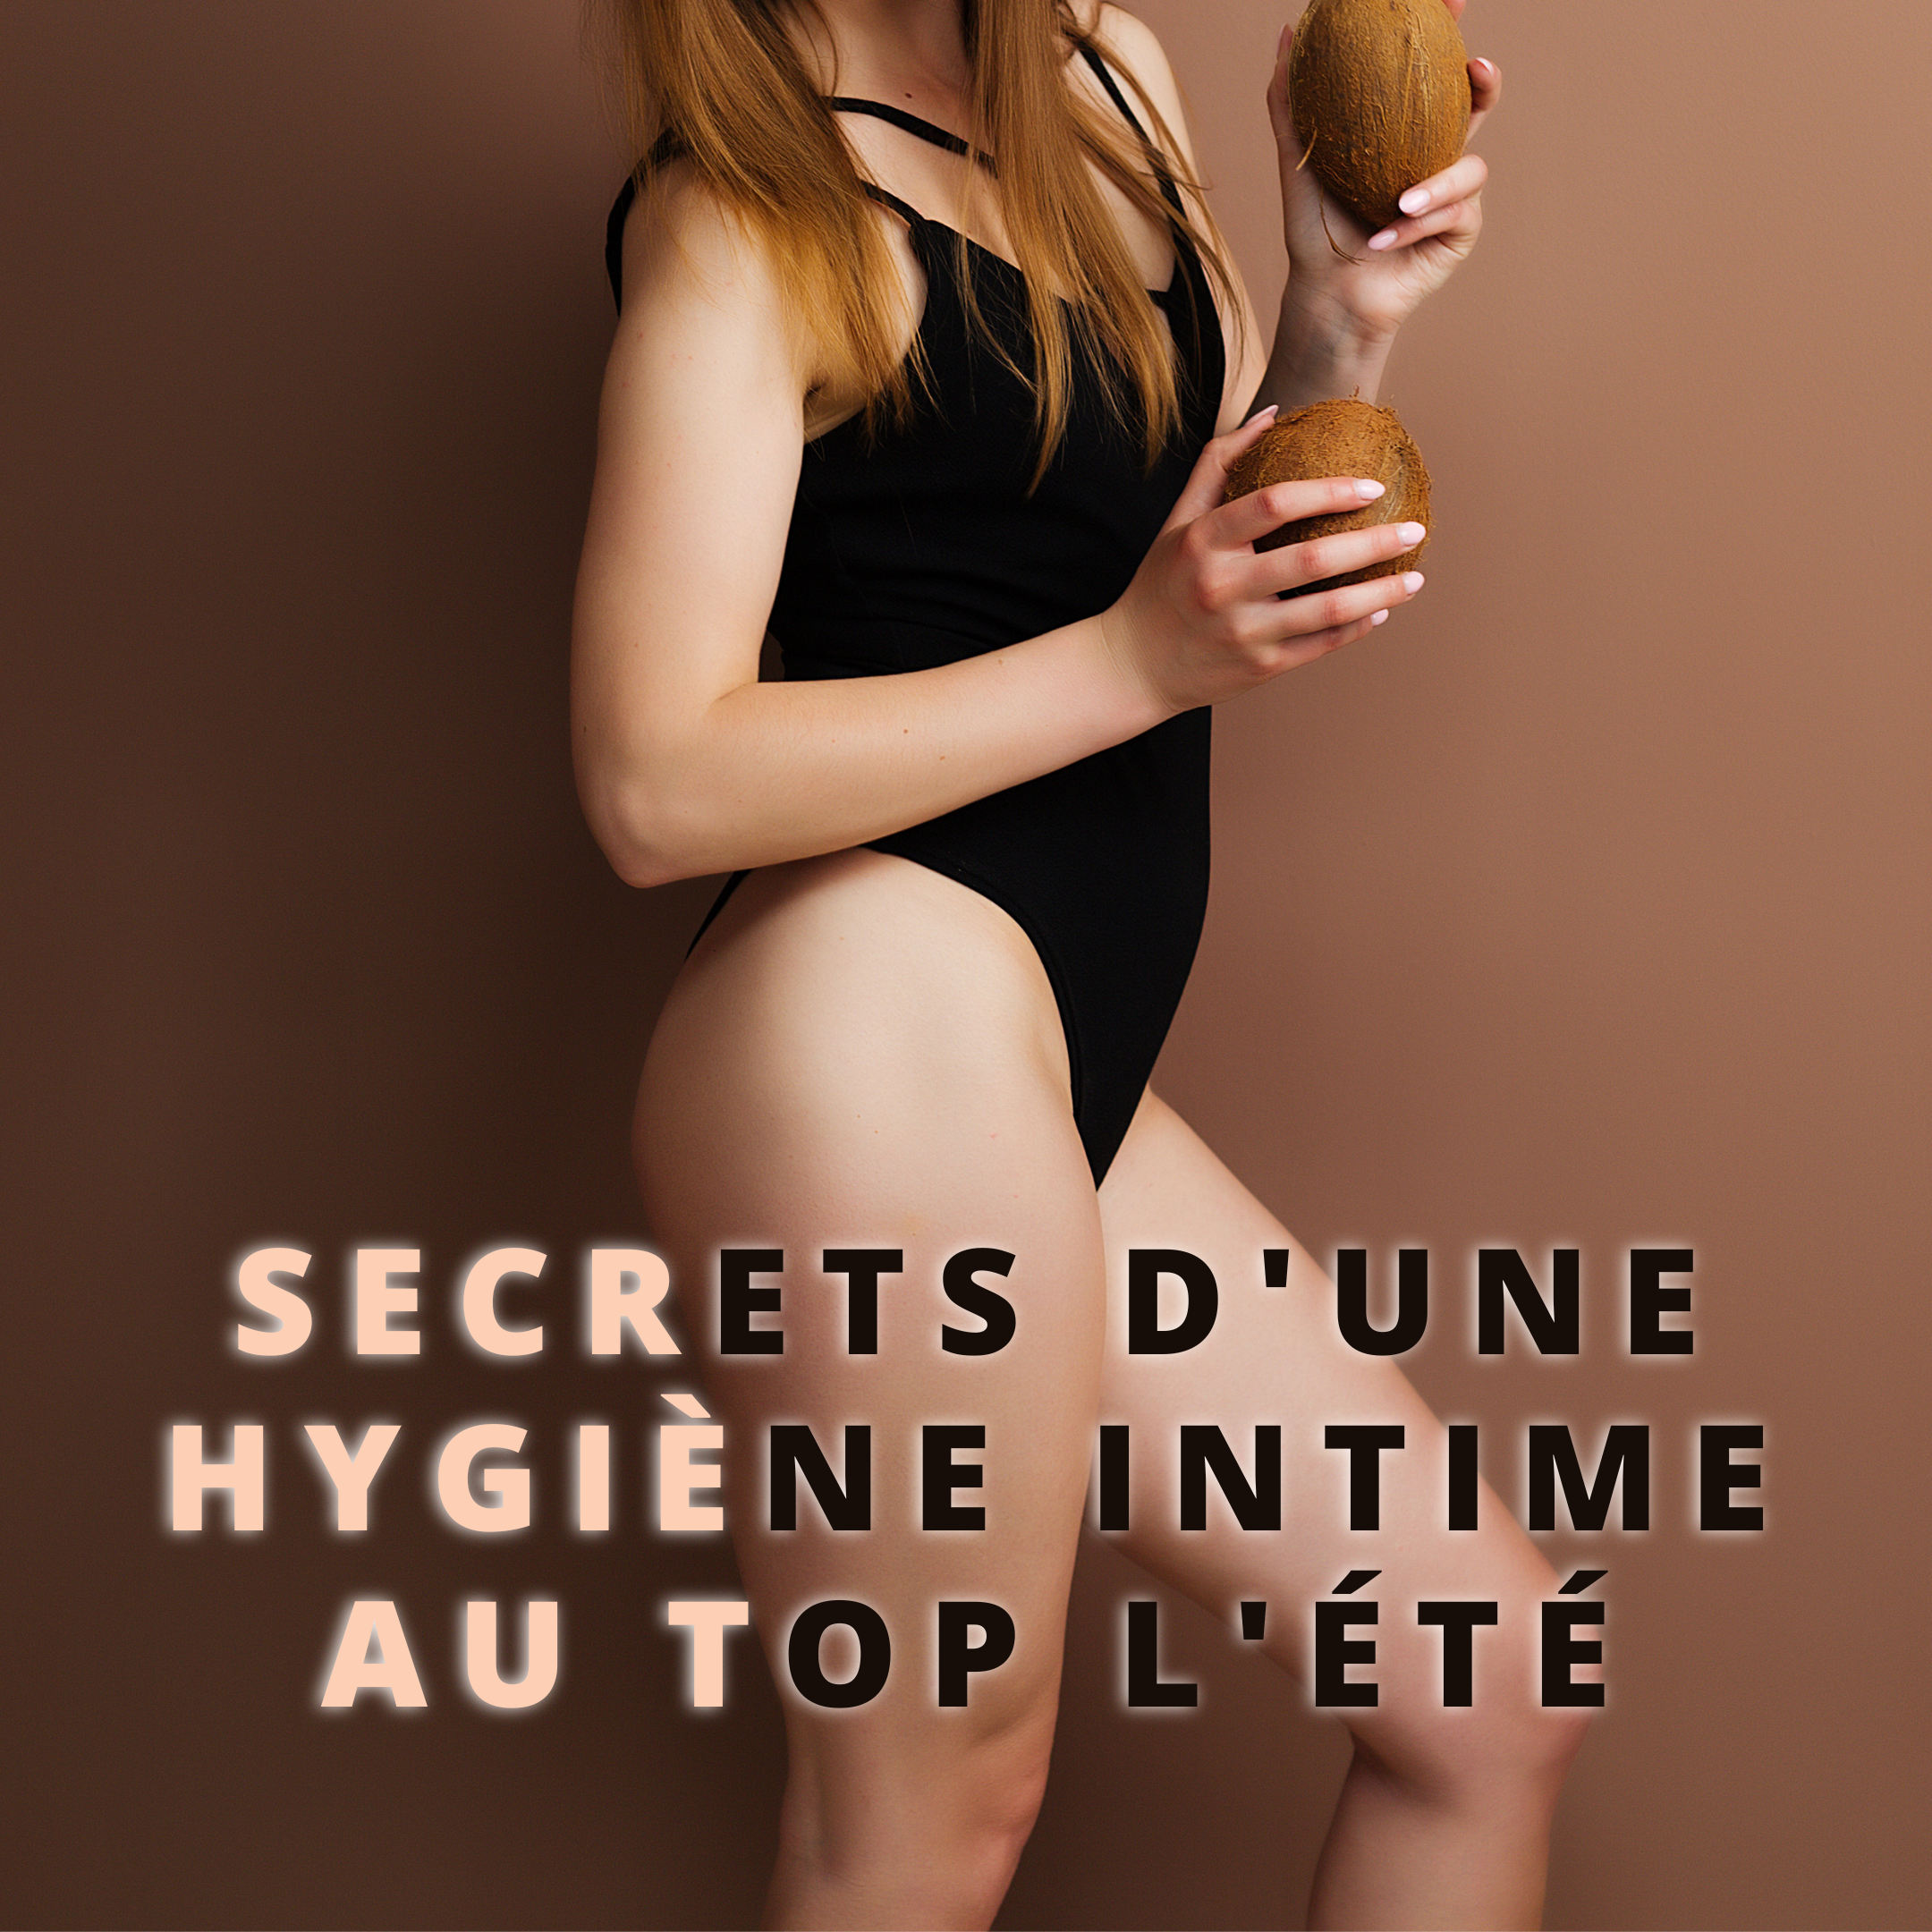 Les Secrets d'une Hygiène Intime au Top Pendant l'Été